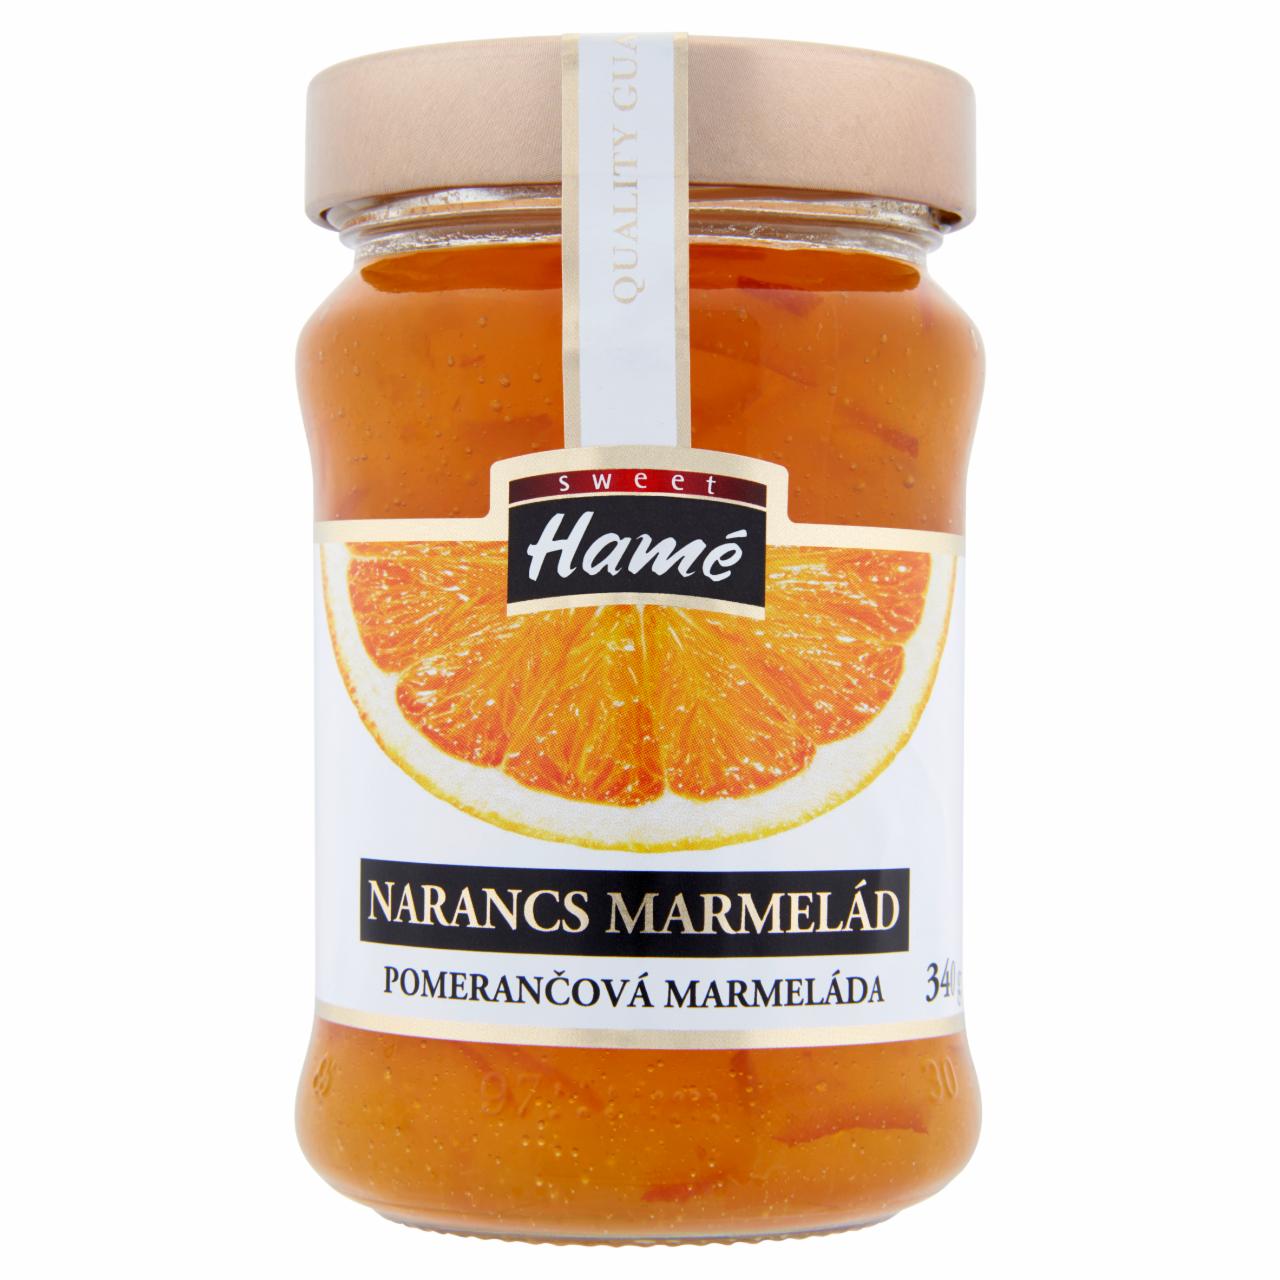 Képek - Hamé narancs marmelád 340 g